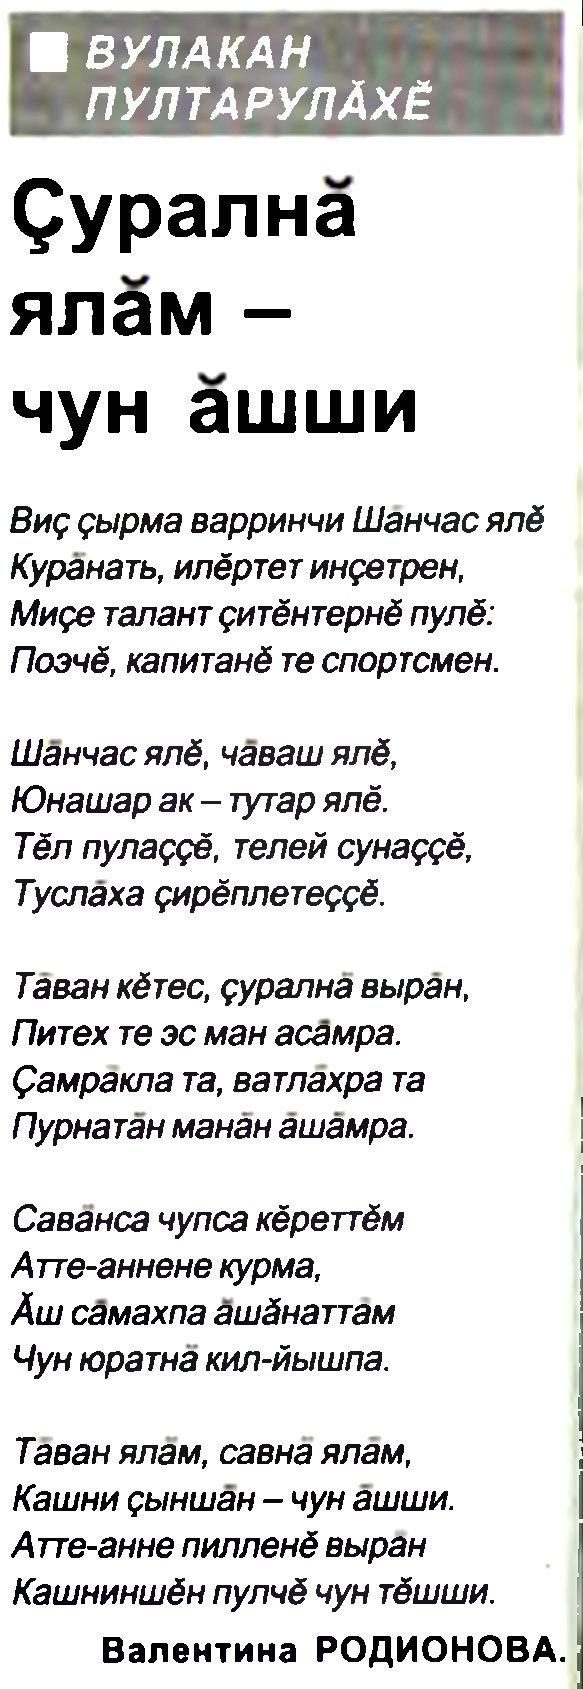 Поэтические строки о родной деревне СЕМЕНЧИНО-ШАНЧАС на чувашском языке